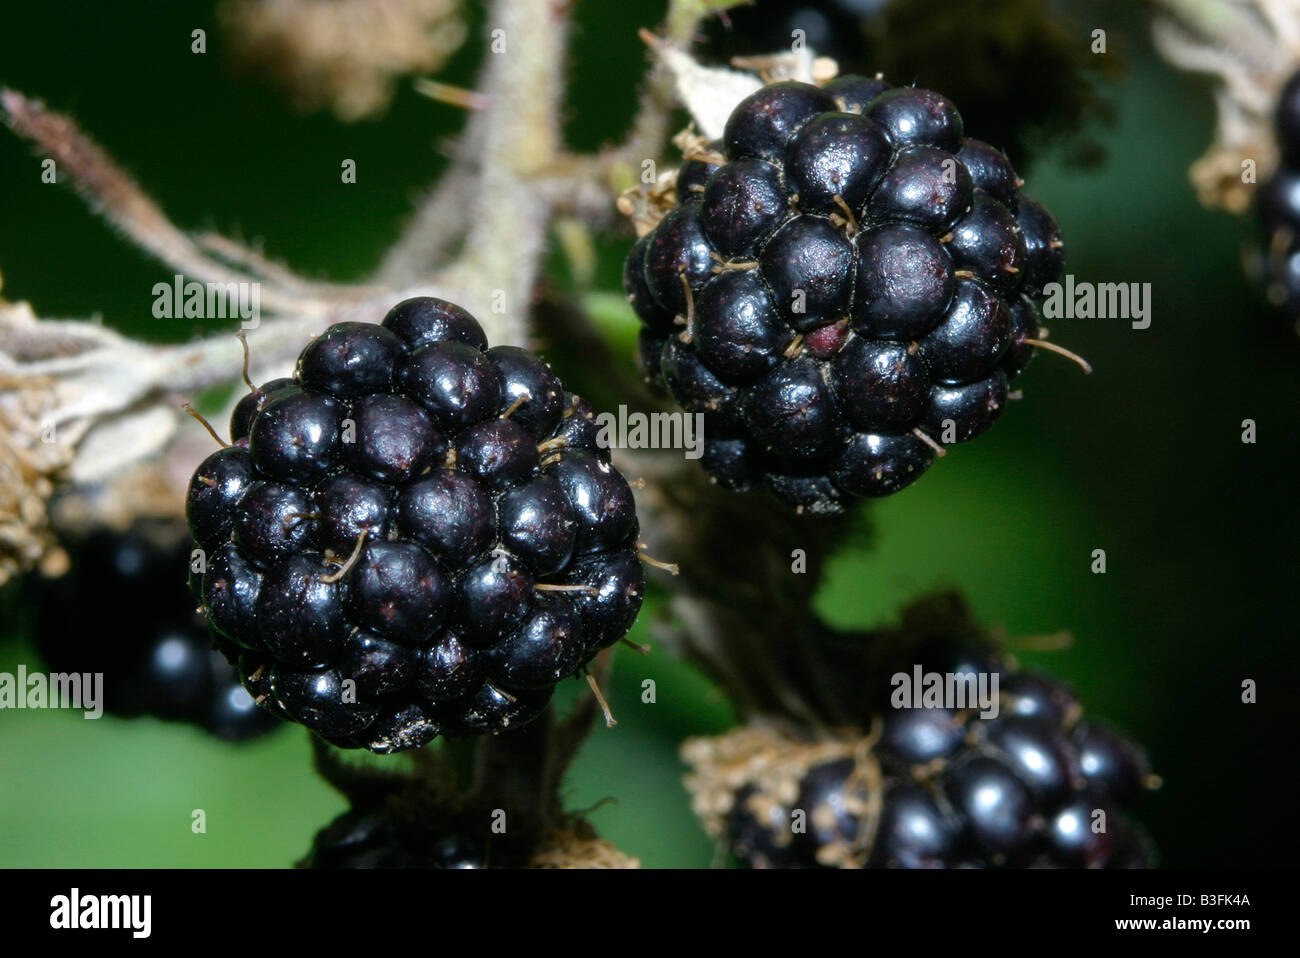 Brombeere Rubus fruticosus schwarzbeere kratzbeere blackberry bramble raspberry Stock Photo